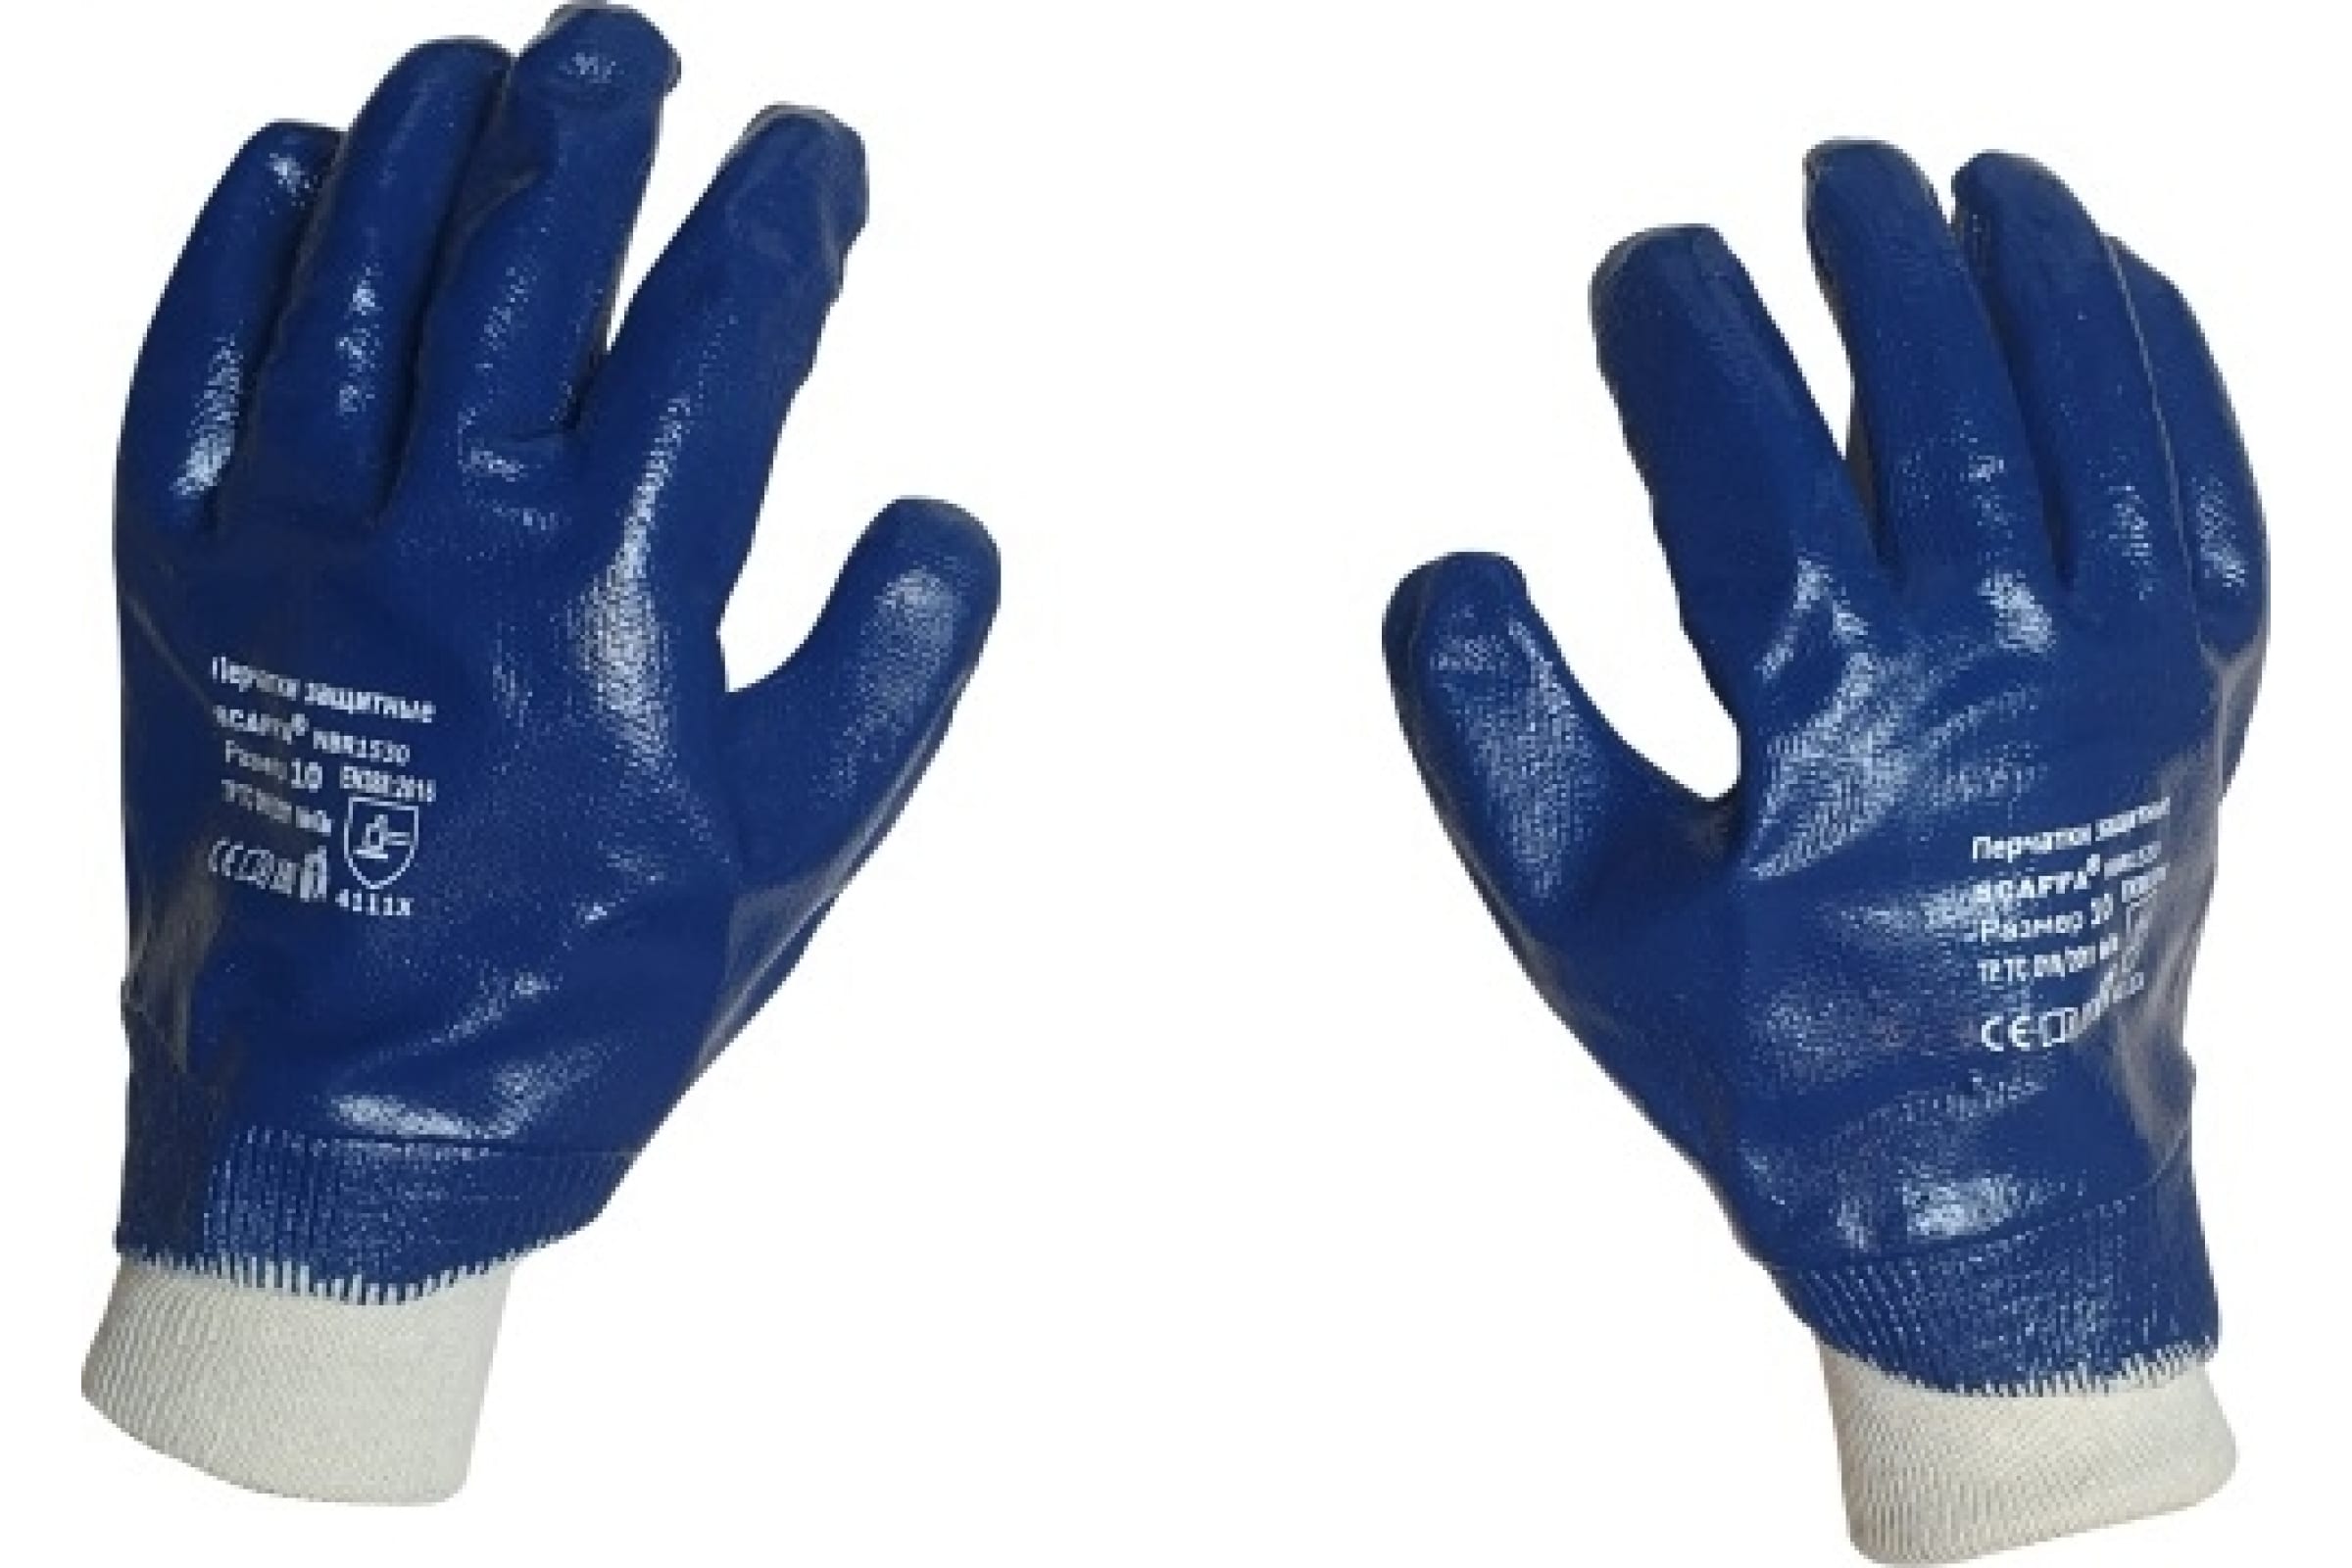 Scaffa перчатки с полным нитриловым обливом NBR1530 размер 10 00-00012457 перчатки нейлоновые с нитриловым обливом размер 10 оранжевые